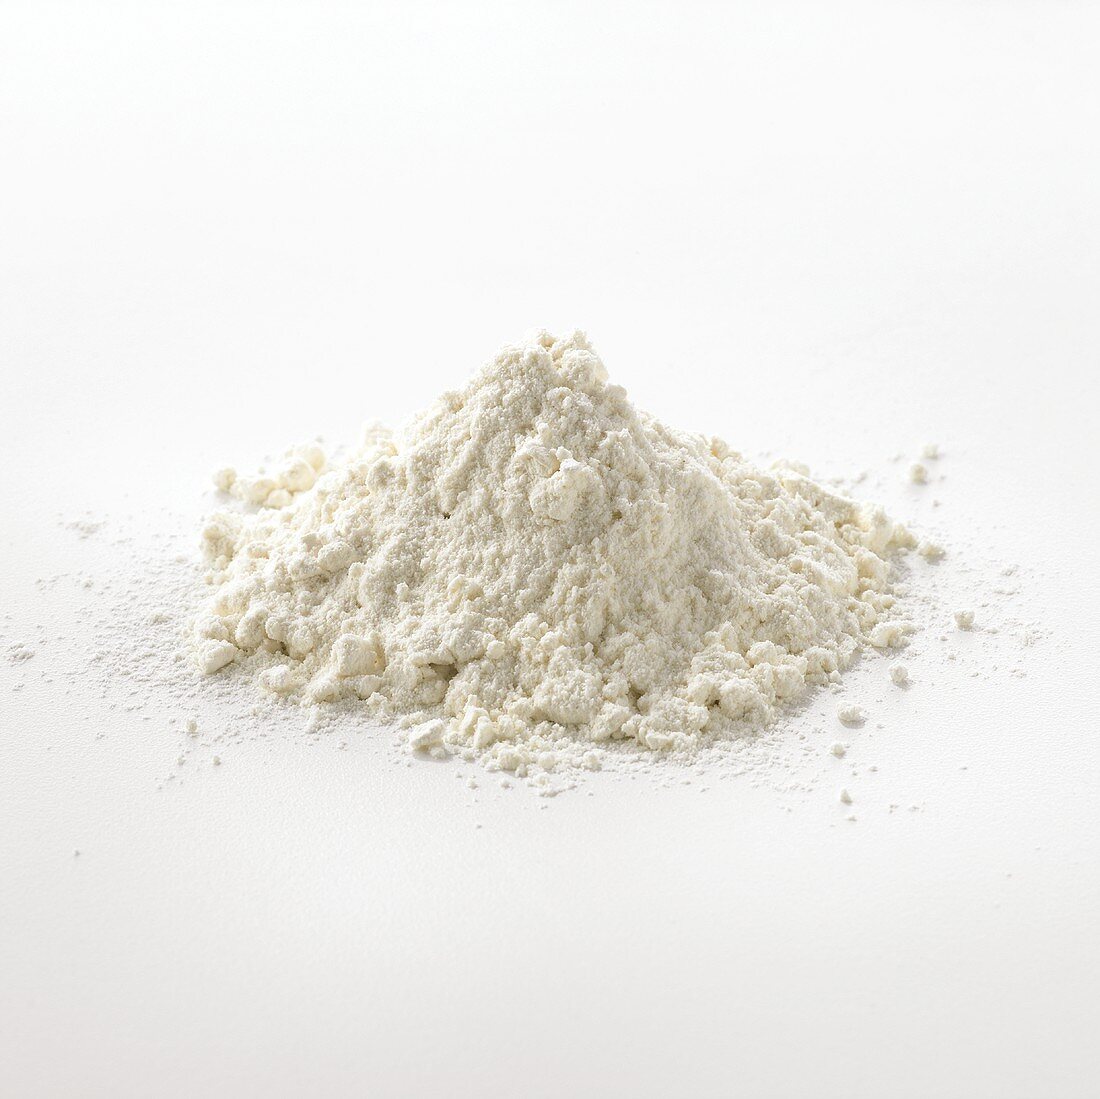 Wheat flour Type 550